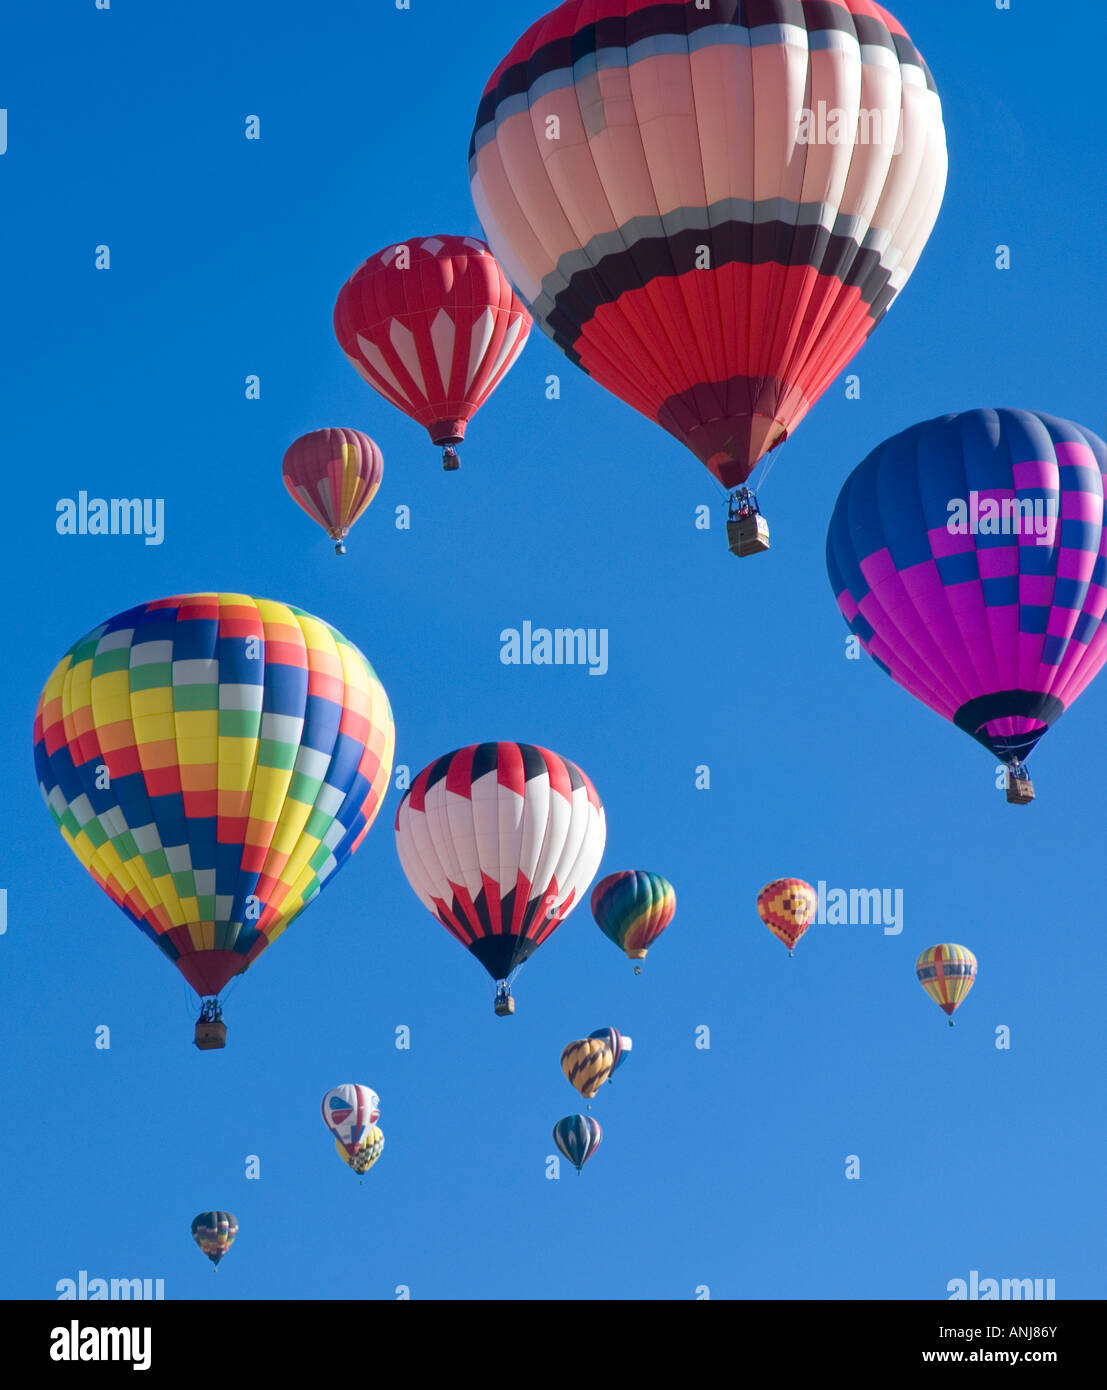 Hot air balloons at Balloon Fiesta in Albuquerque New Mexico Stock Photo